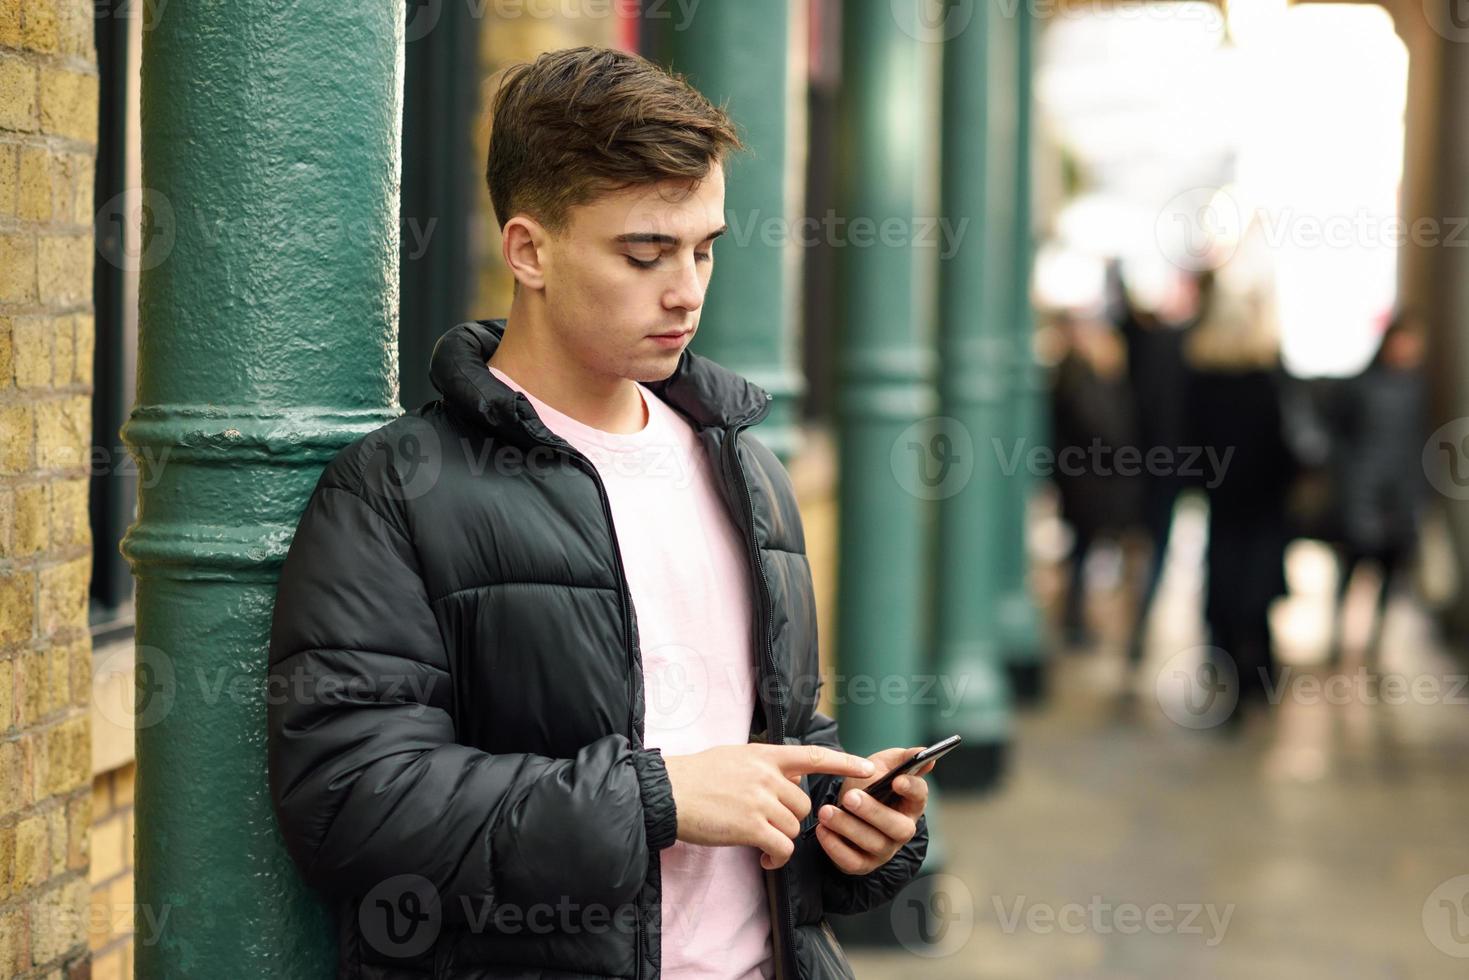 jovem urbano usando smartphone em meio urbano. foto